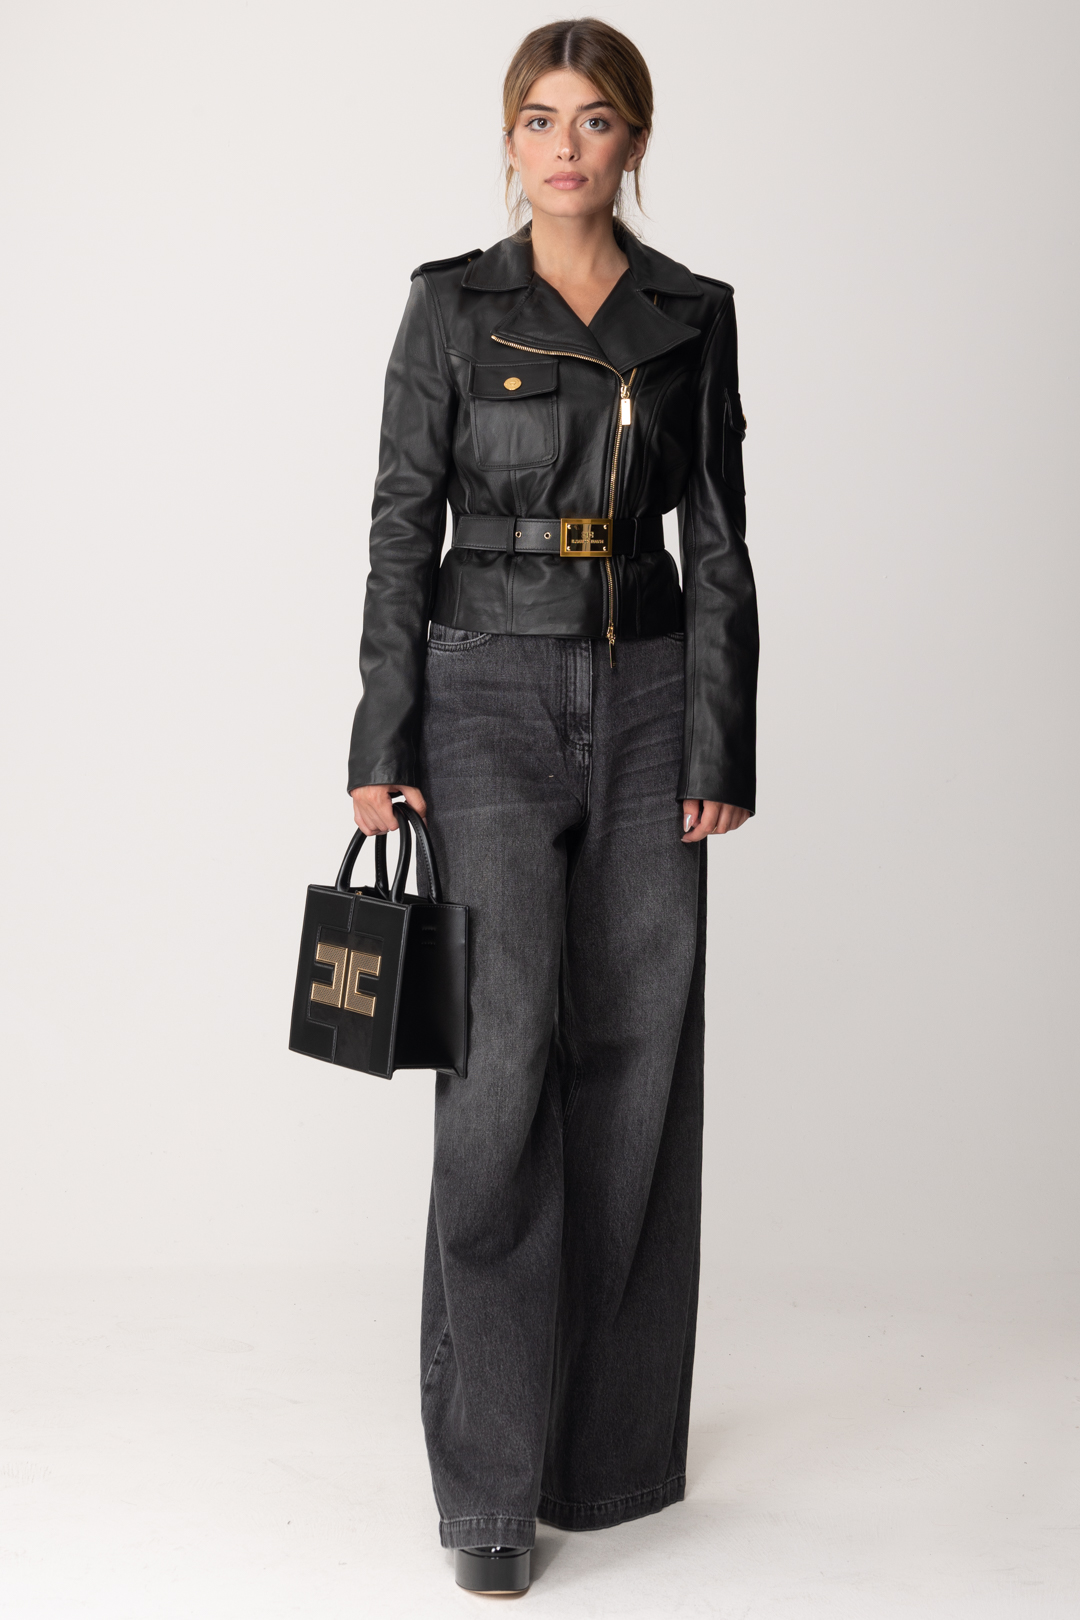 Aperçu: Elisabetta Franchi Veste courte en cuir avec ceinture Nero